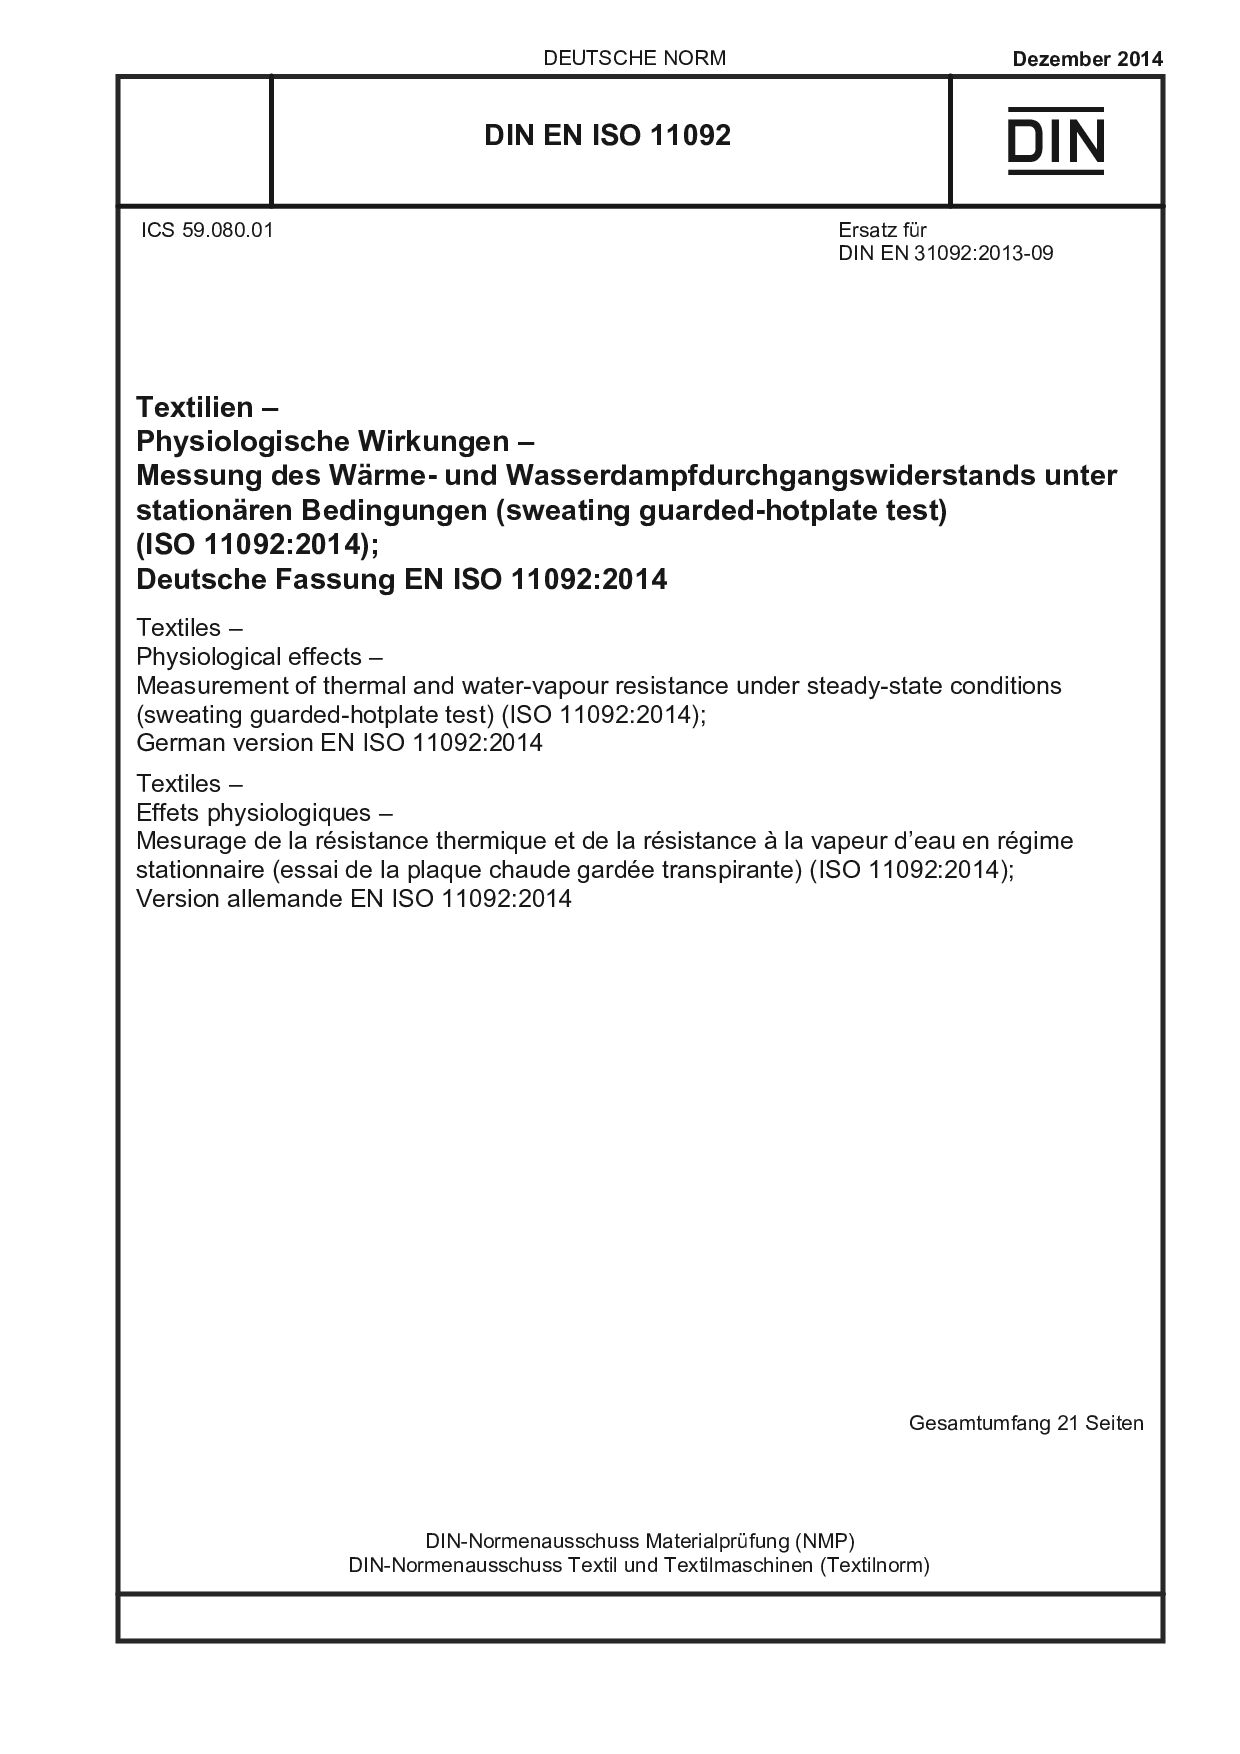 DIN EN ISO 11092:2014封面图